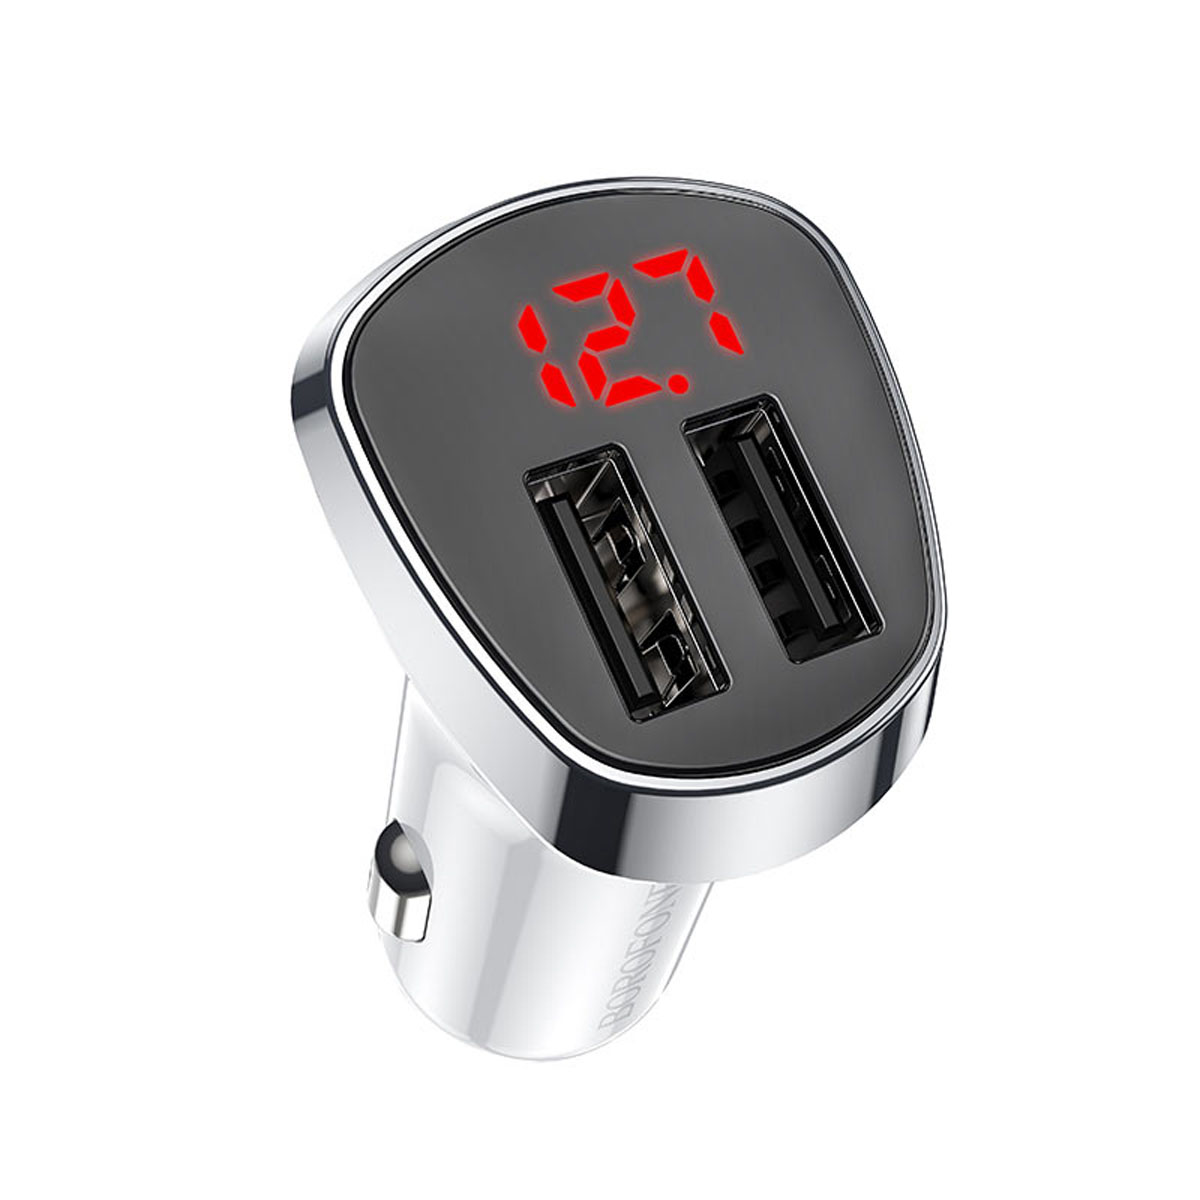 АЗУ (Автомобильное зарядное устройство) BOROFONE BZ15 Auspicious, 12W, 2.4A, 2 USB, цвет белый